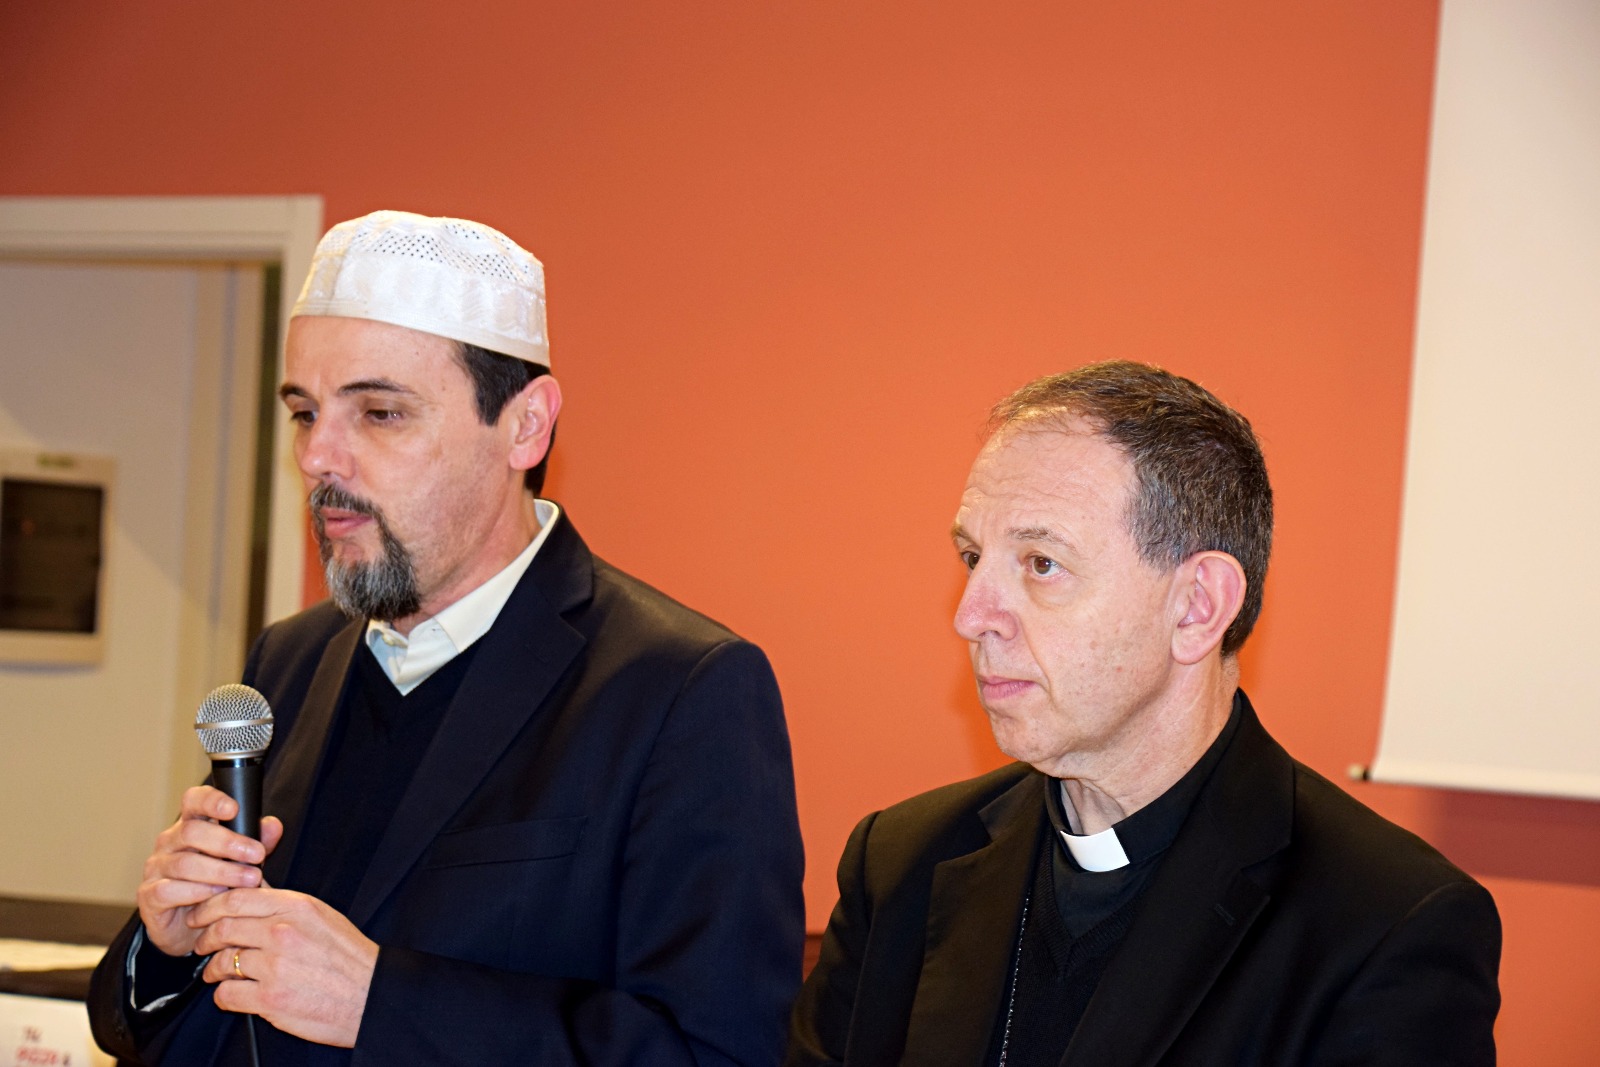 Cena Interreligiosa cattolici musulmani Ventimiglia 18 marzo 2018_046